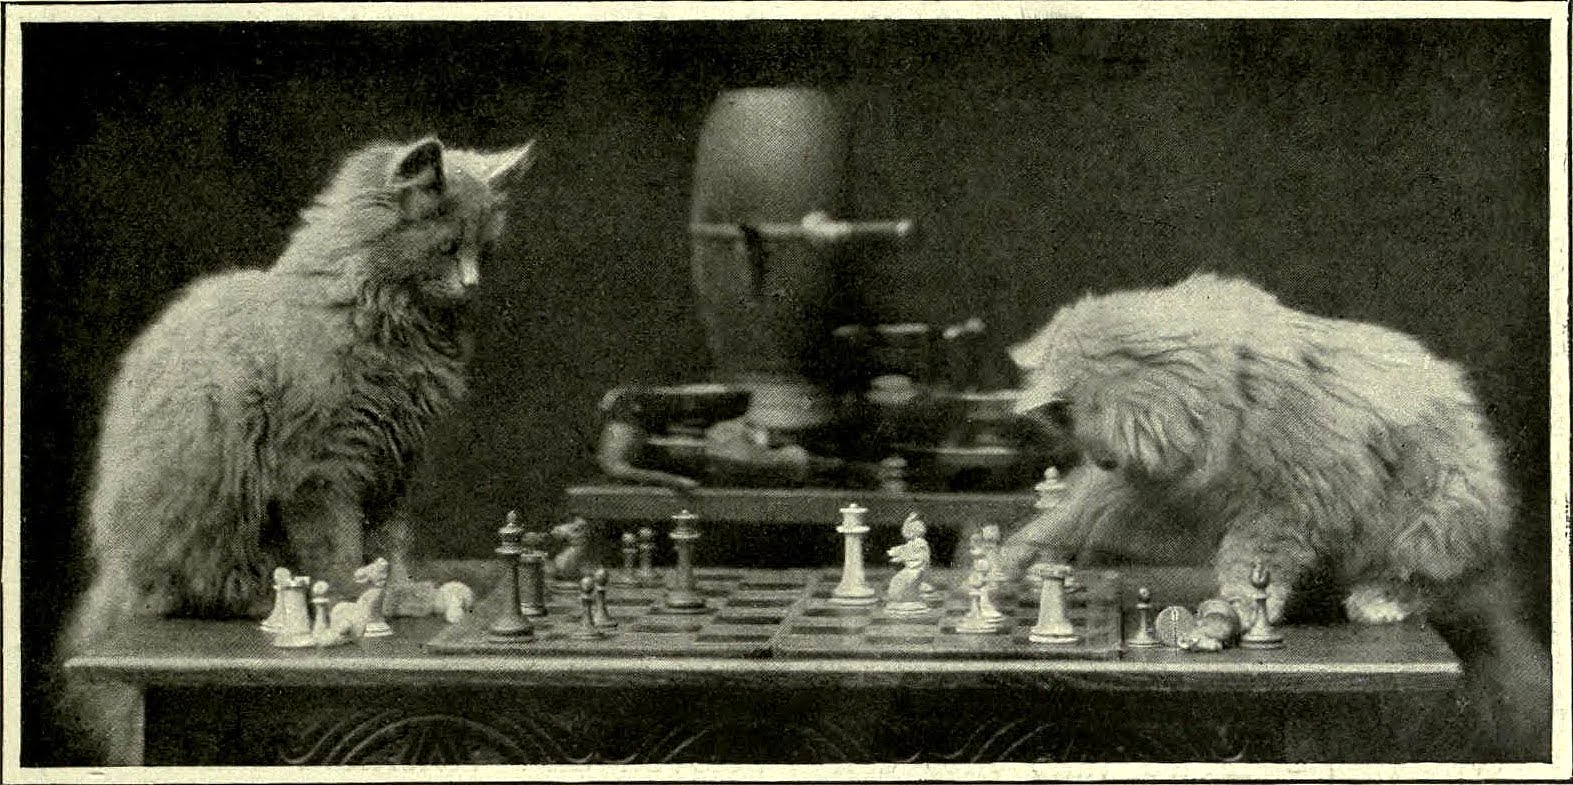 http://1.bp.blogspot.com/-JPPayfQQVQ0/UDjLbMryy_I/AAAAAAAAadU/y2elXlLH854/s1600/Cat_chess_2.jpg